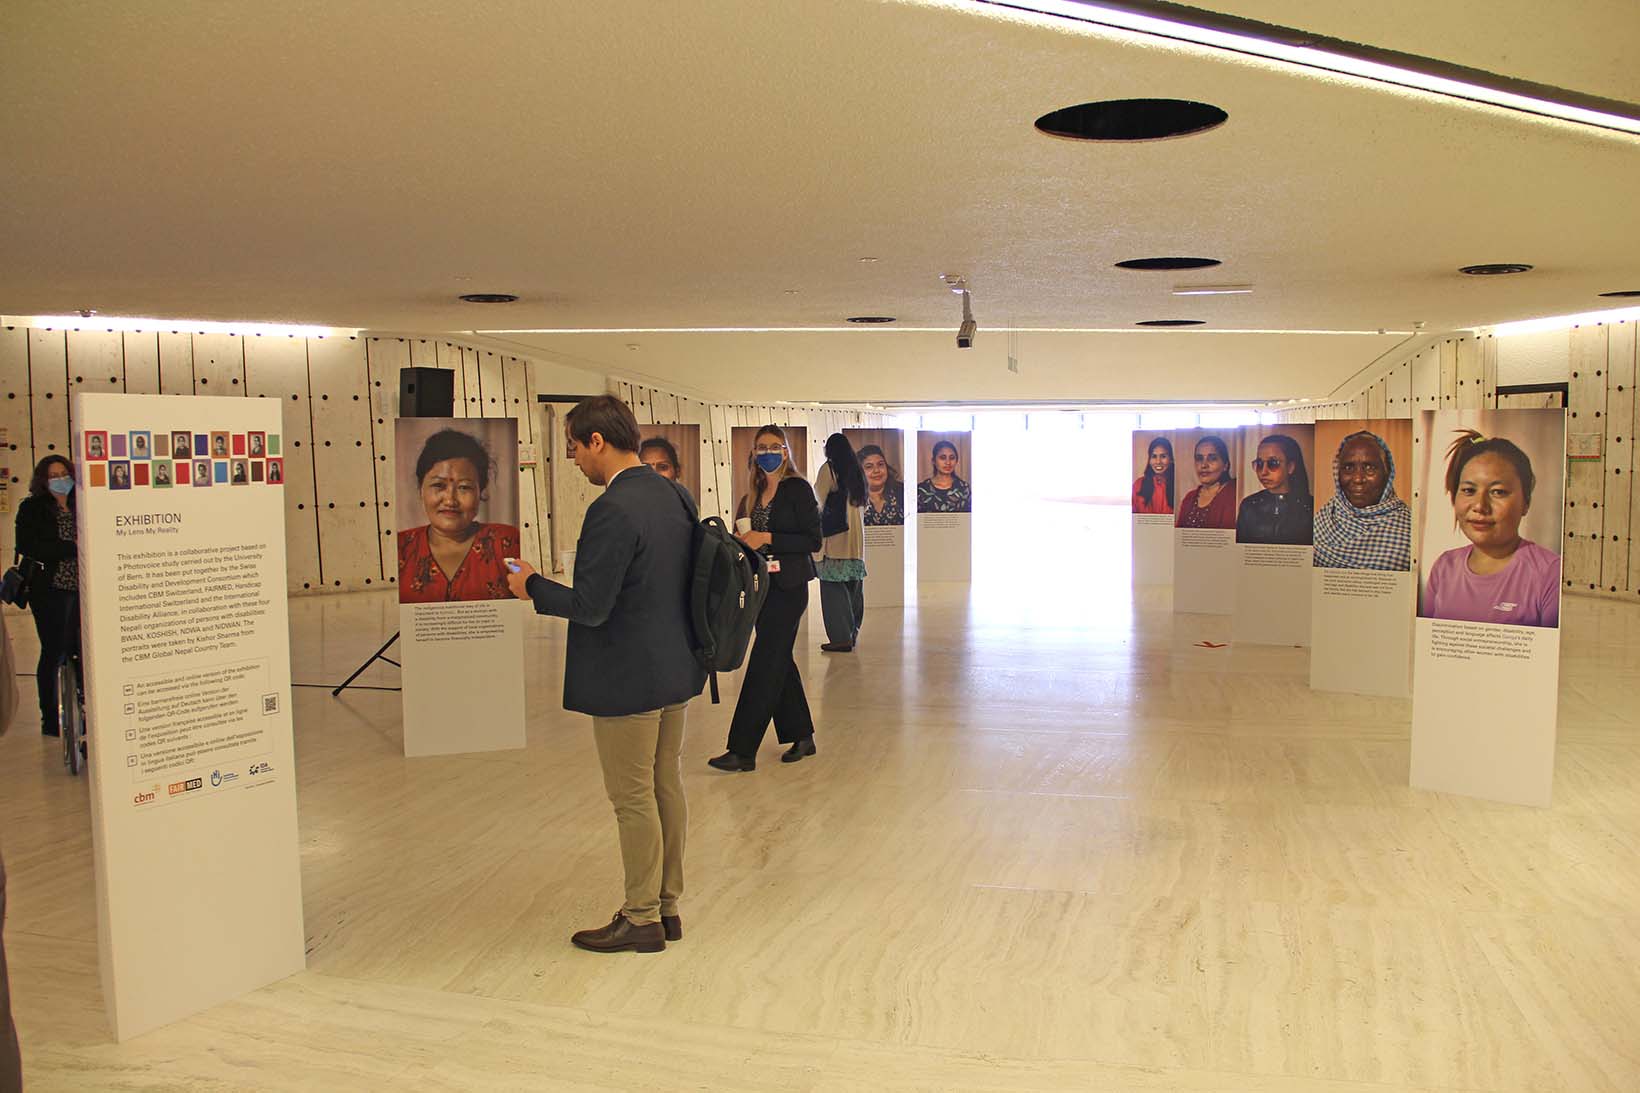 Eine Fotoaustellung in einem Gebäude der UNO in Genf. Links vorne ist ein Panel, das den Kontext der Ausstellung beschreibt, dahinter sowie rechts davon sind zehn Panels mit Portraits von nepalesischen Frauen. Einige Personen schauen sich die Panels an.